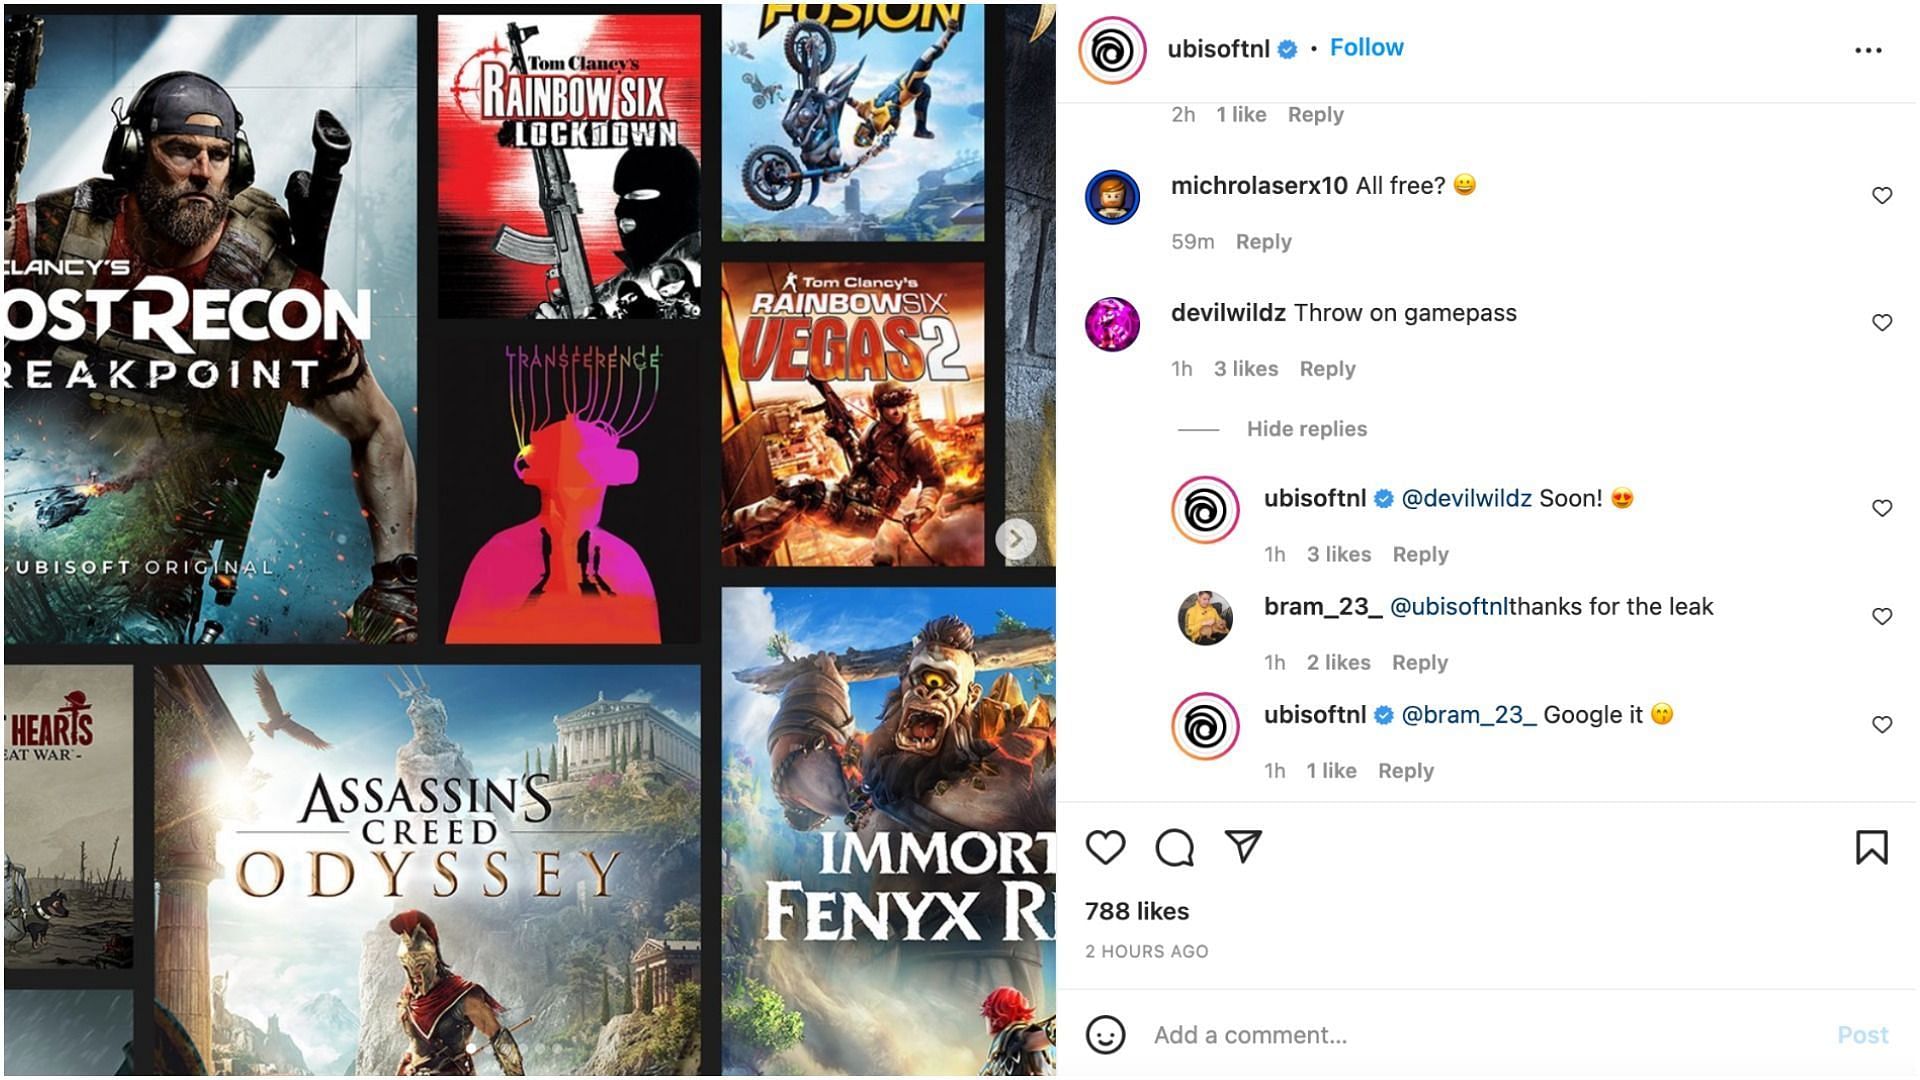 Postingan di mana Ubisoft Belanda membuat komentar (Gambar via Instagram/Ubisoft)